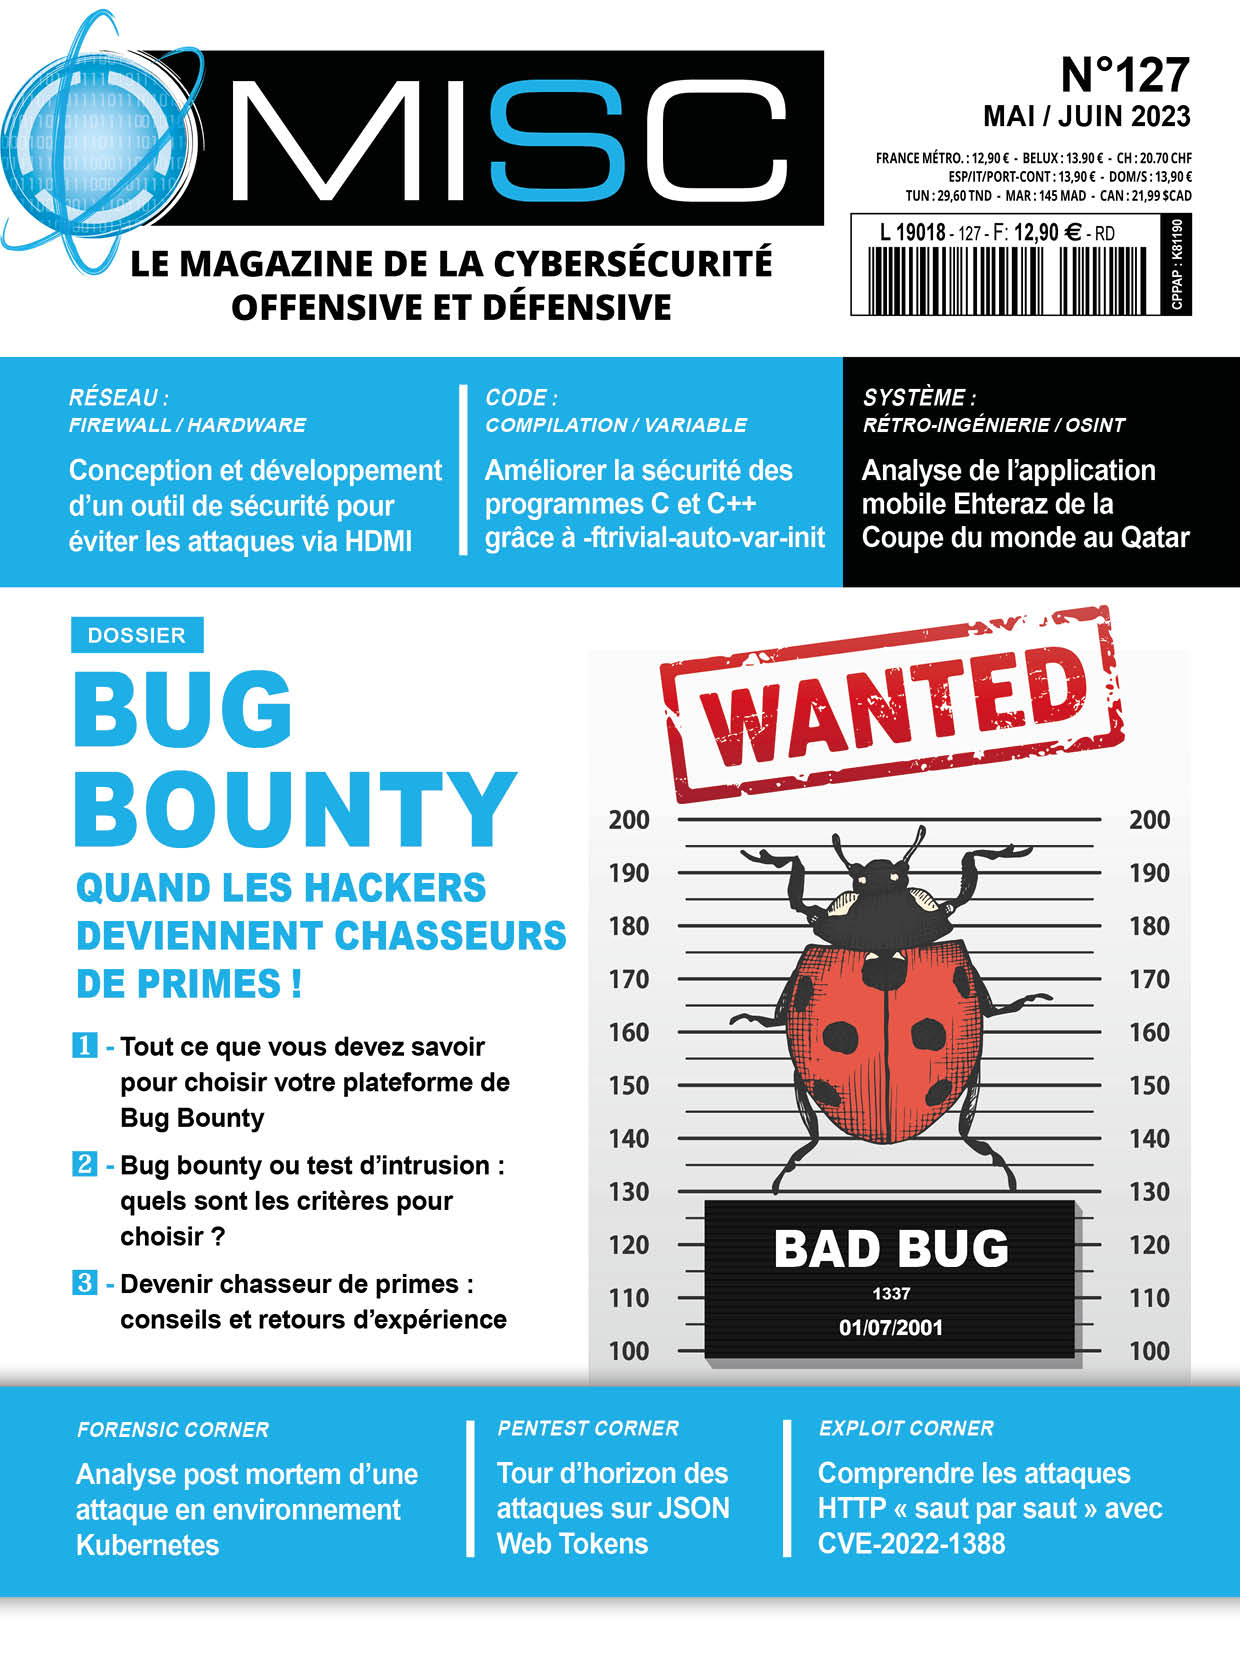 Bug Bounty - Quand les hackers deviennent chasseurs de primes !